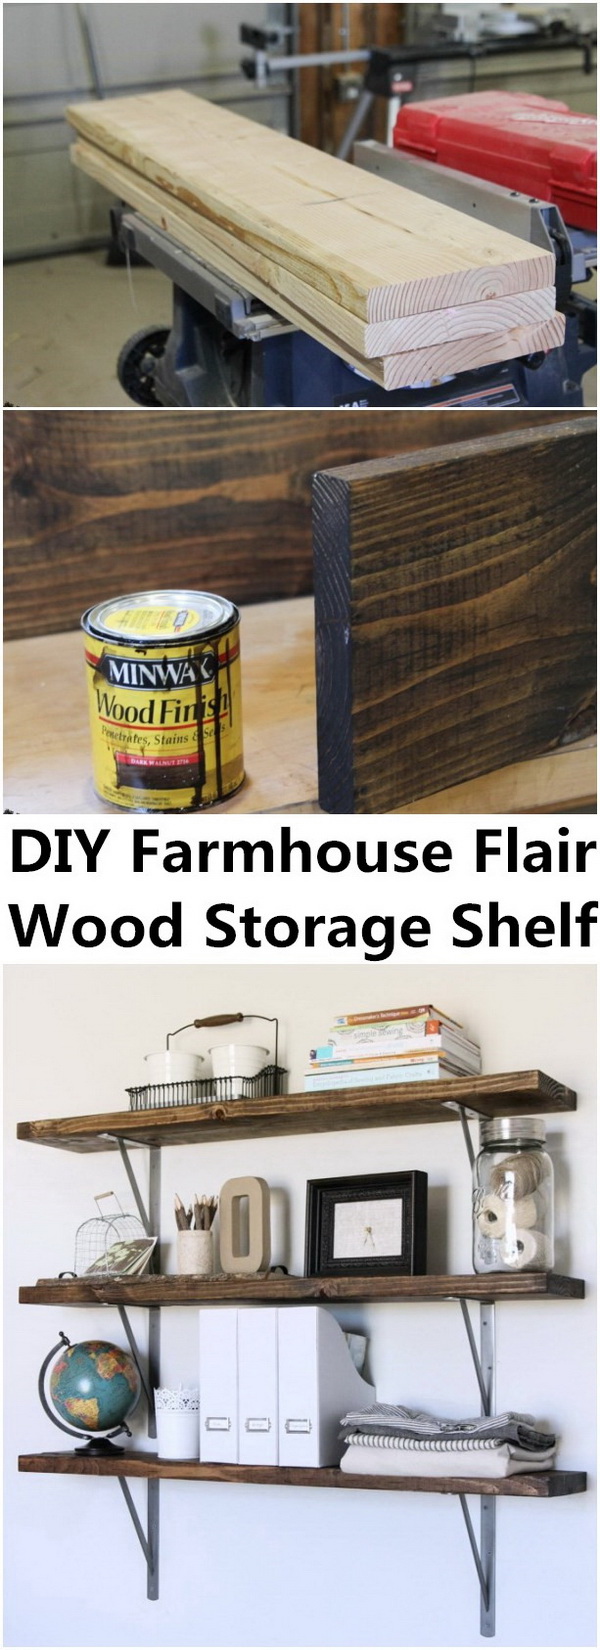 Farmhouse Flair DIY Wood Storage Shelf. 